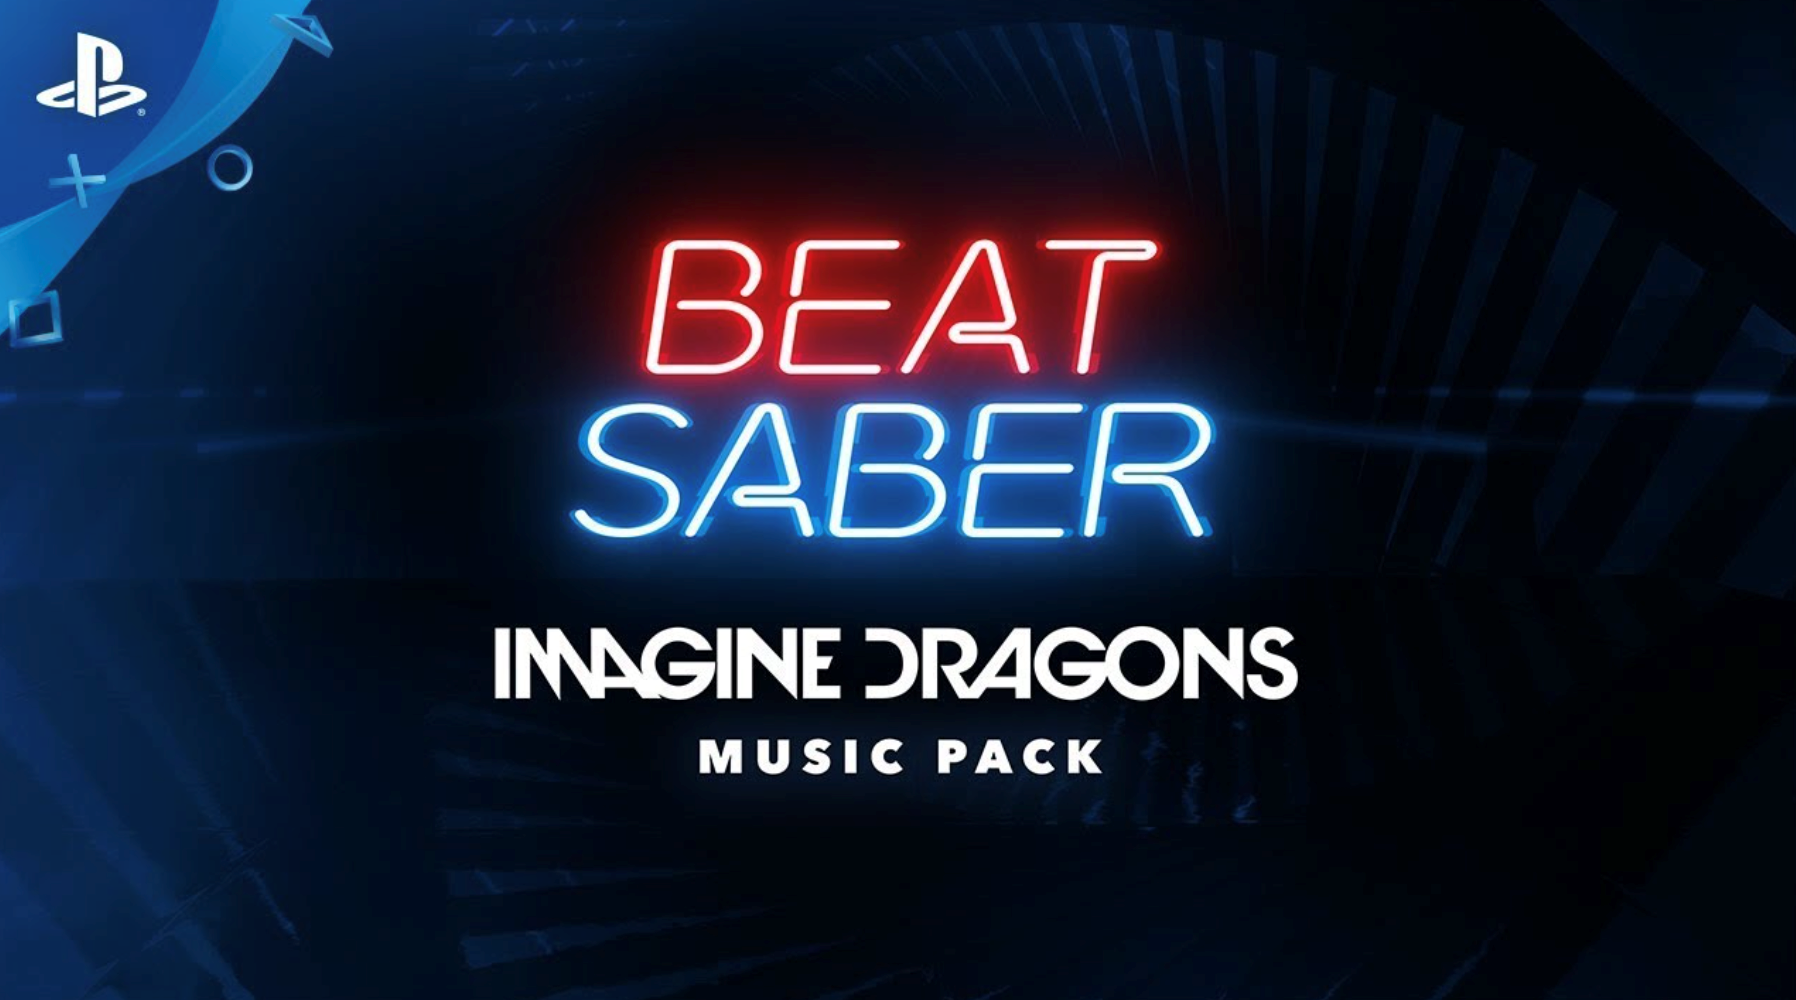 Beats saber ps4. Beat saber + imagine Dragons Music Pack ps4. Beat the Dragon. Beat saber imagine Dragons Expert Plus.